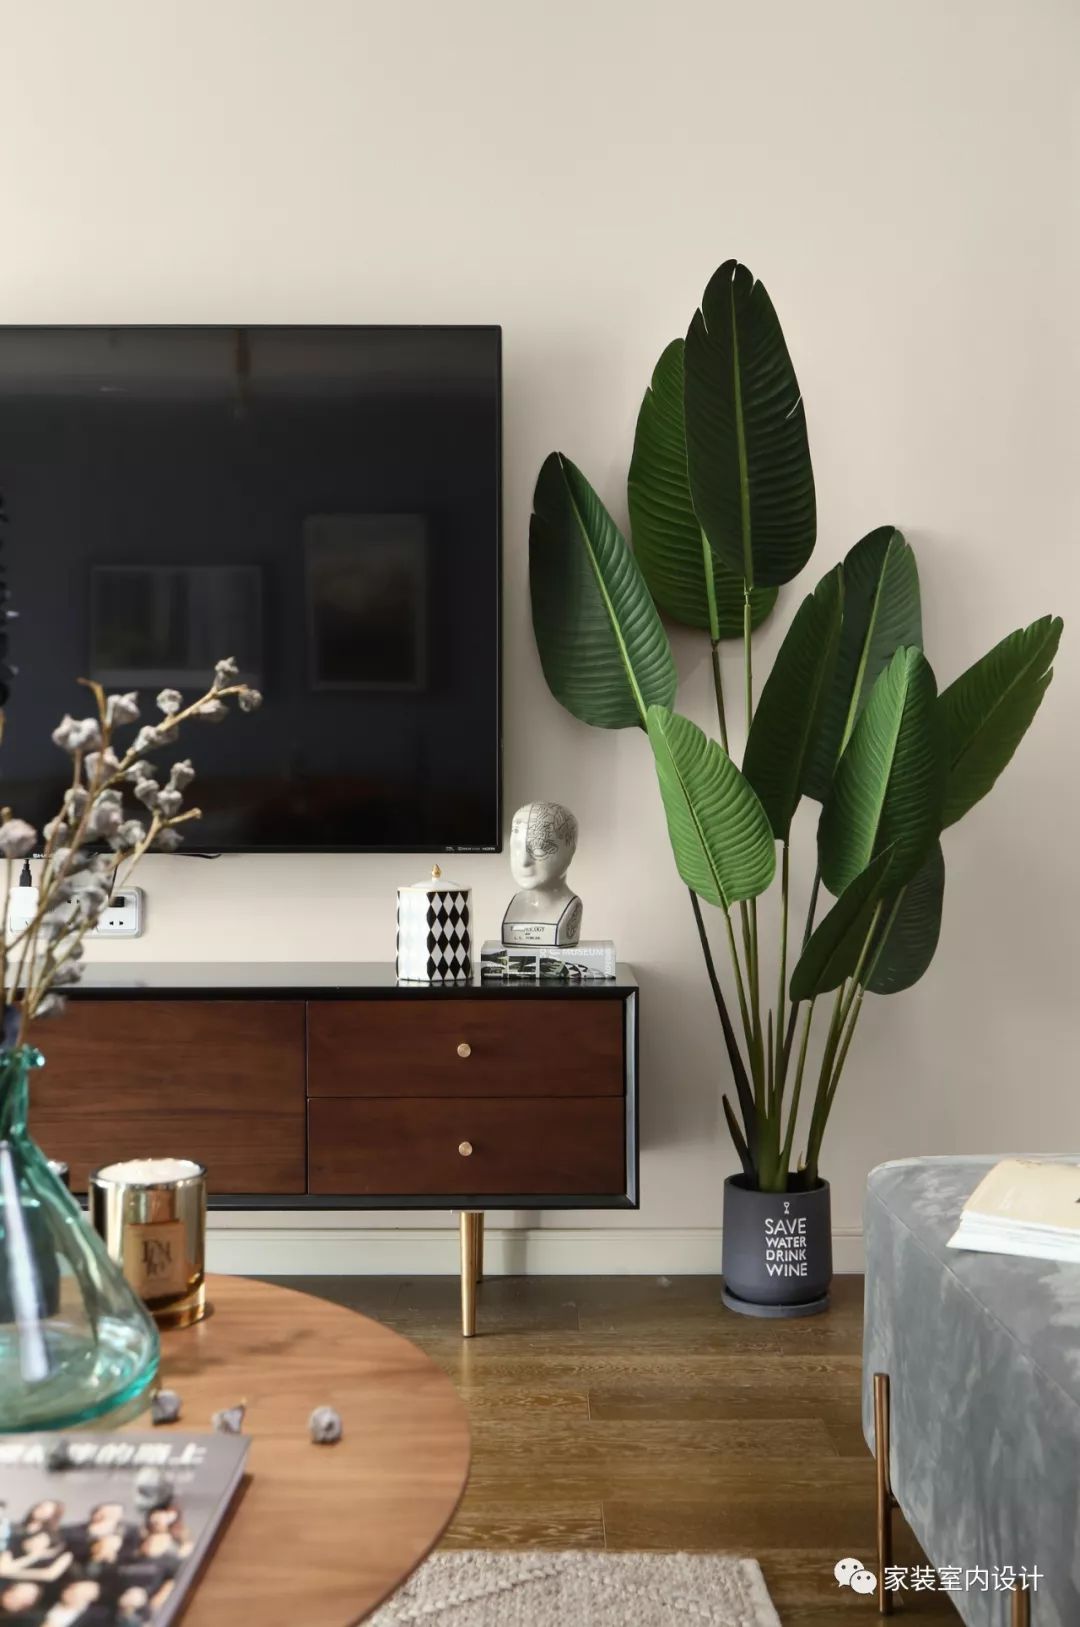 电视墙仅以木质电视柜与旁边的绿植做为装饰摆设,自然简约,给人一种